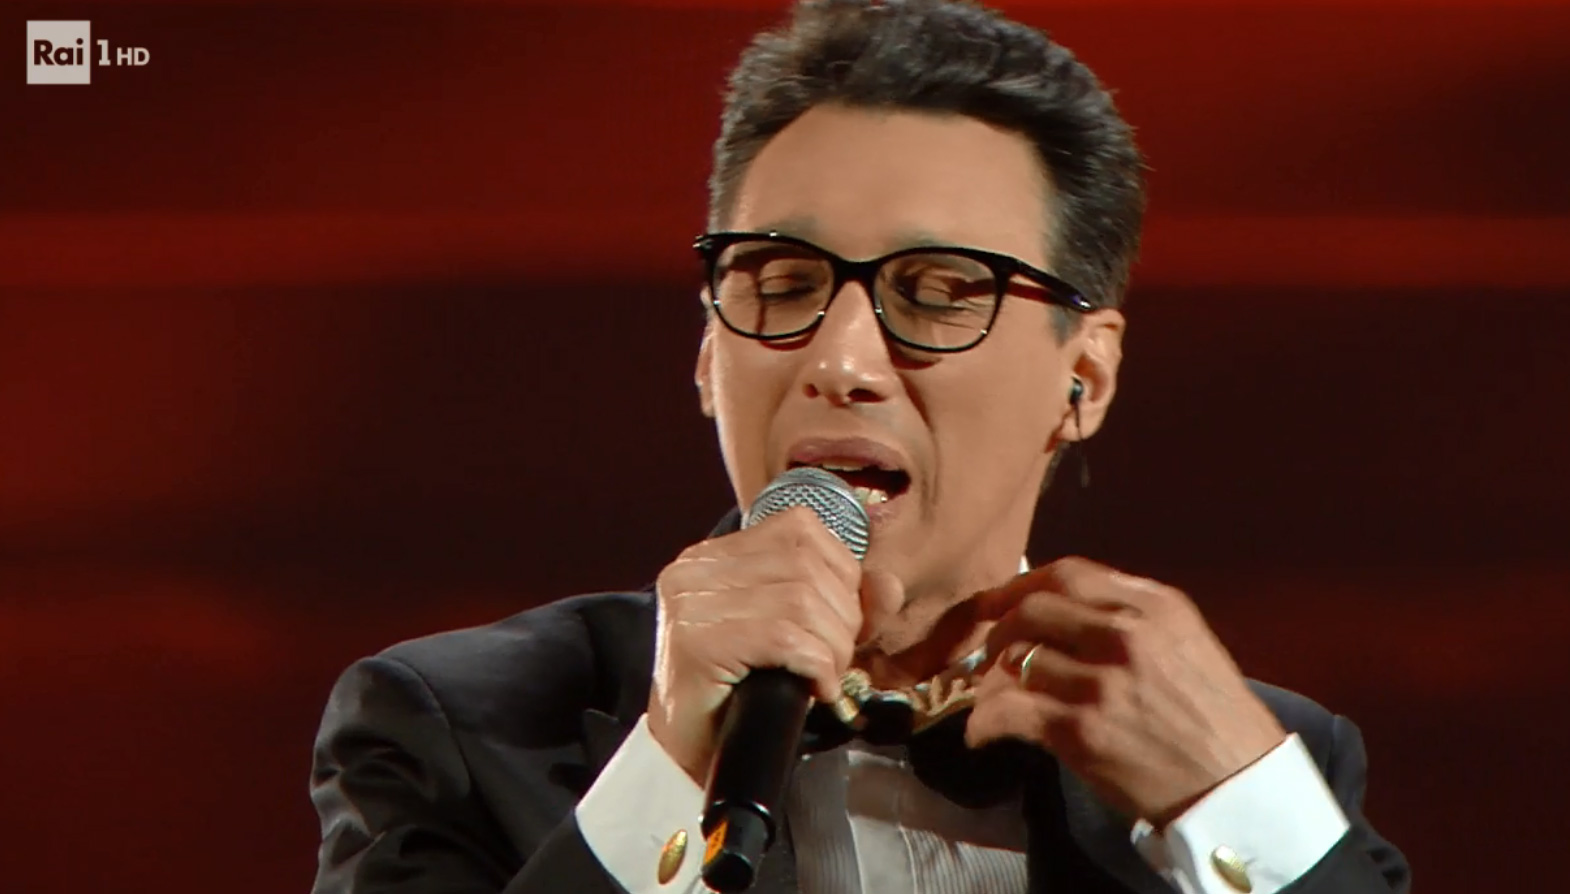 Paolo Jannacci canta 'Voglio parlarti adesso' nella Quarta Serata di Sanremo 2020